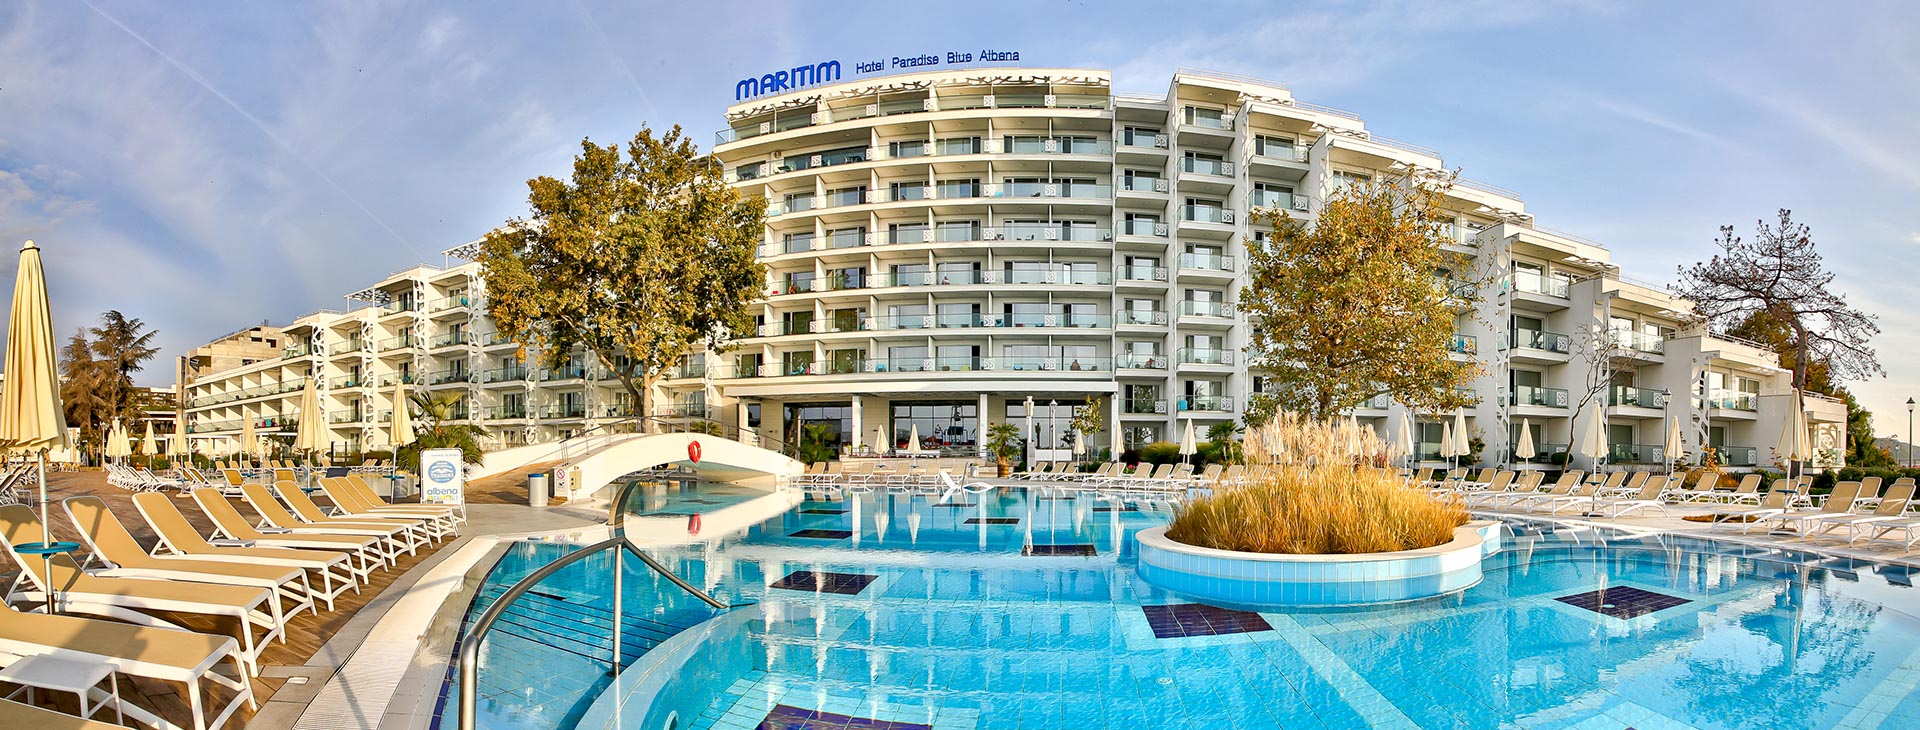 Maritim Hotel Paradise Blue Albena Obrázok1